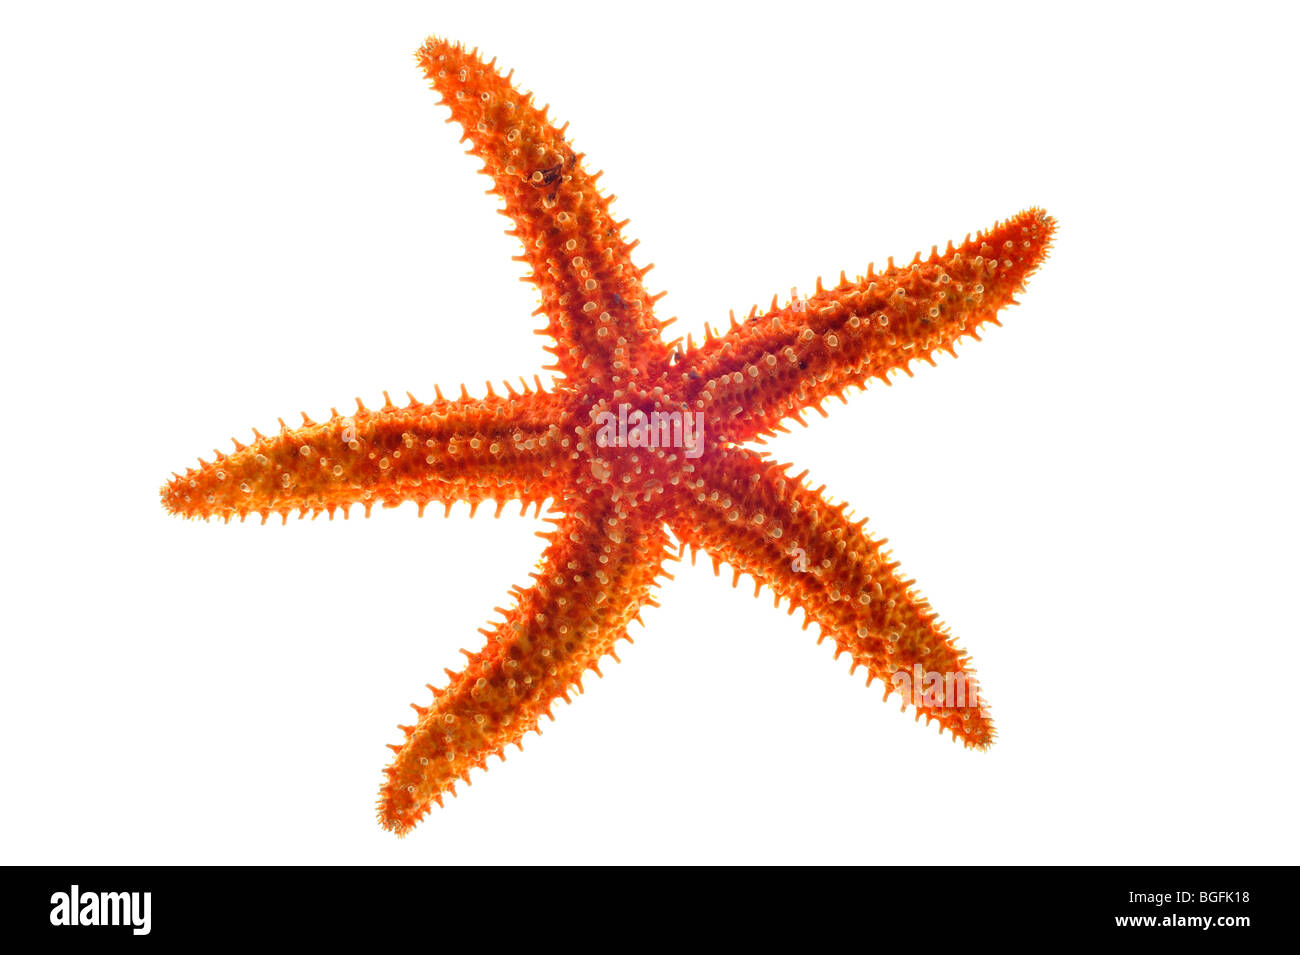 Étoiles de mer communes séchées / étoiles de mer communes / étoiles de sucre (Asterias rubens) sur fond blanc Banque D'Images